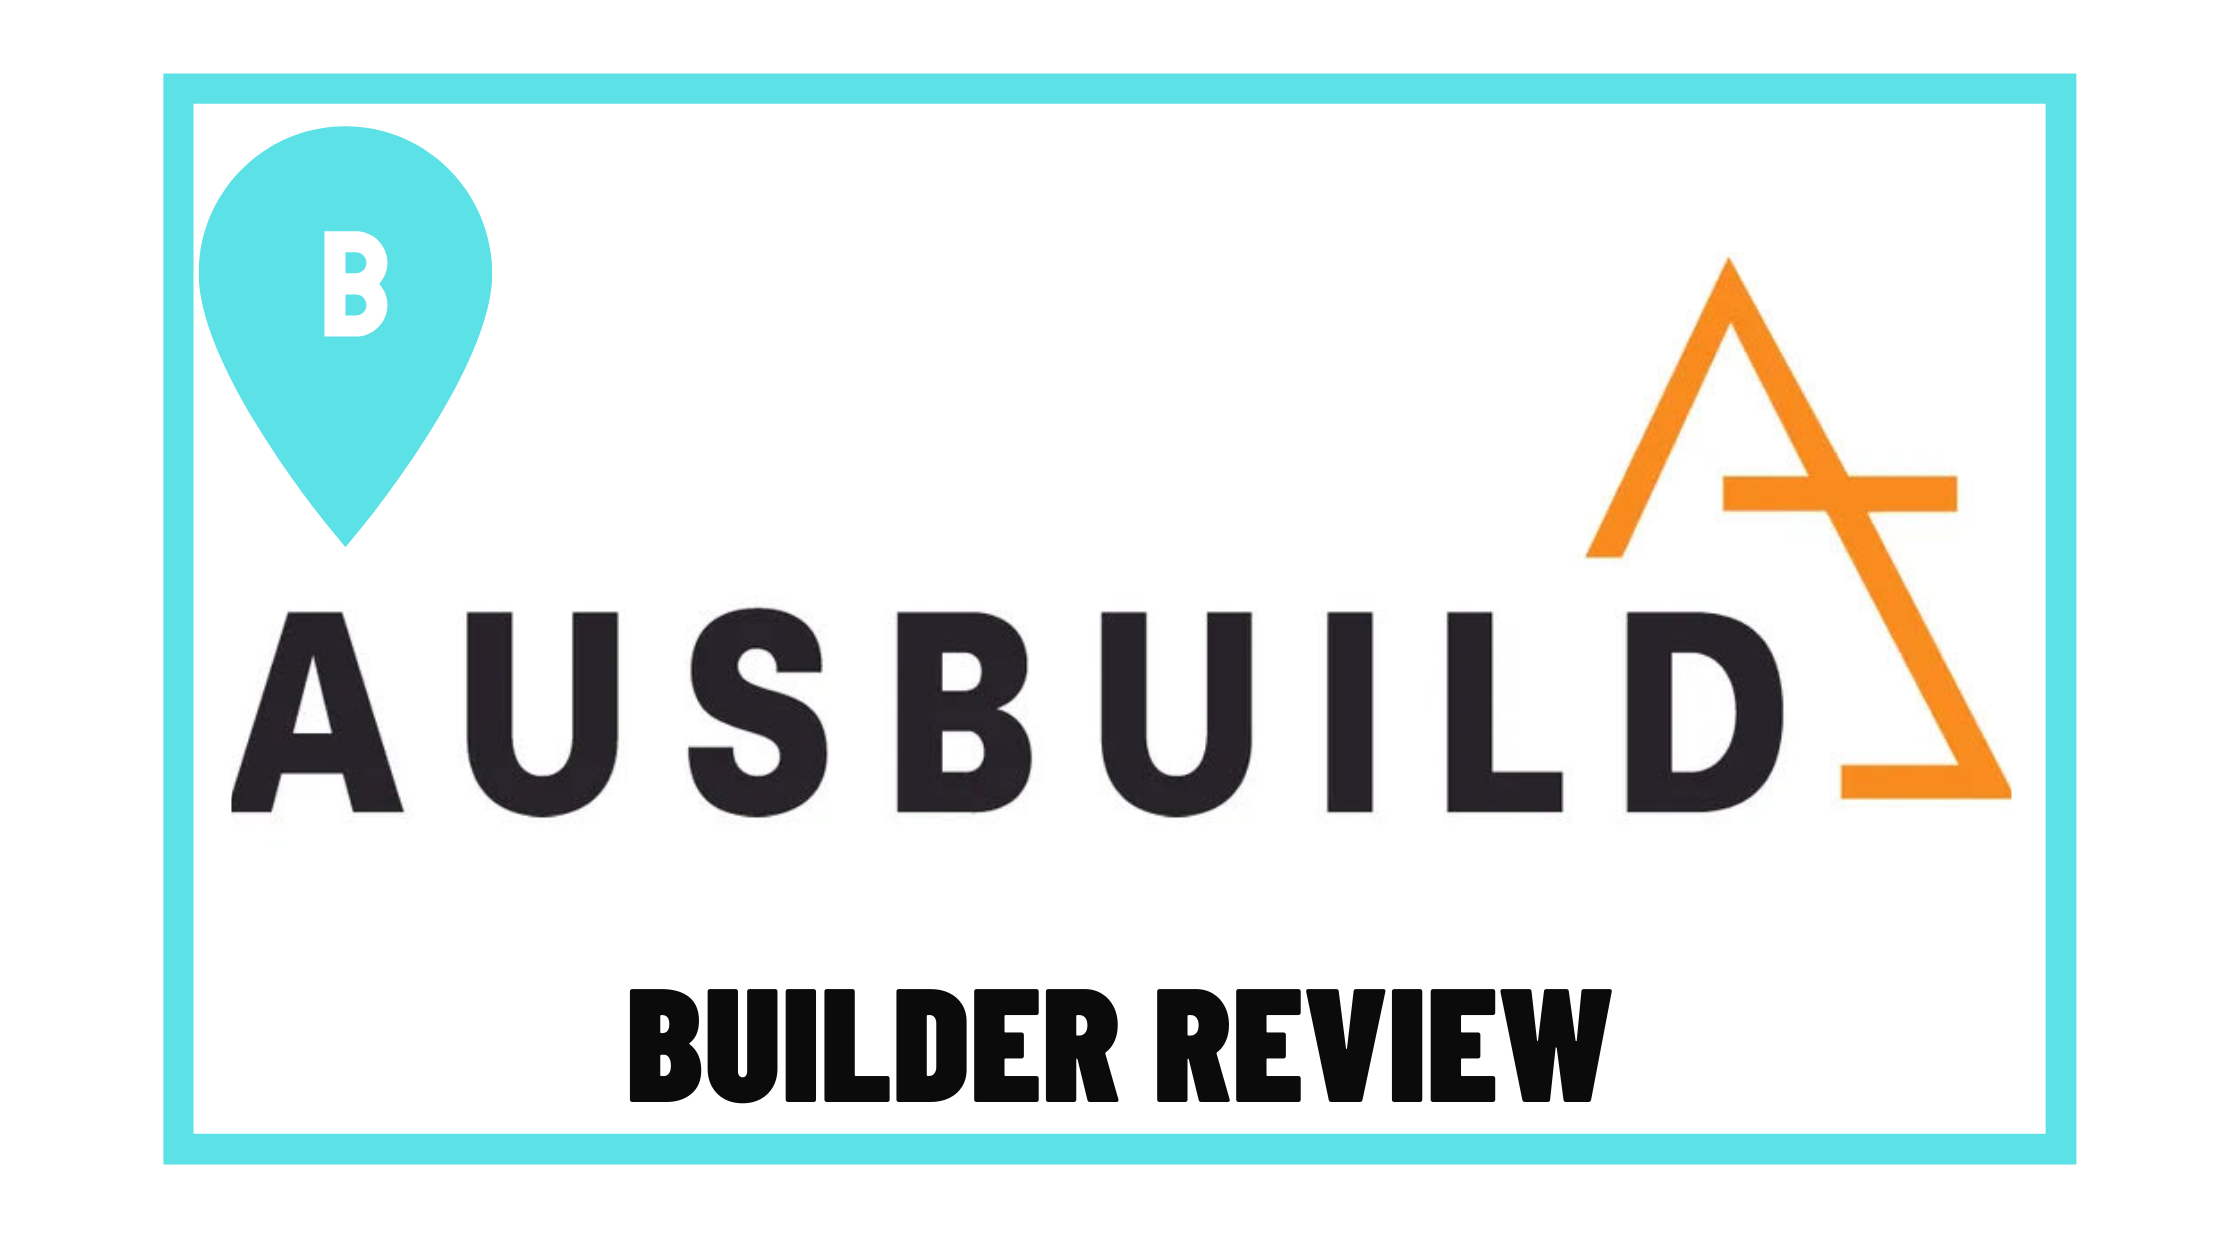 Ausbuild Builder Review